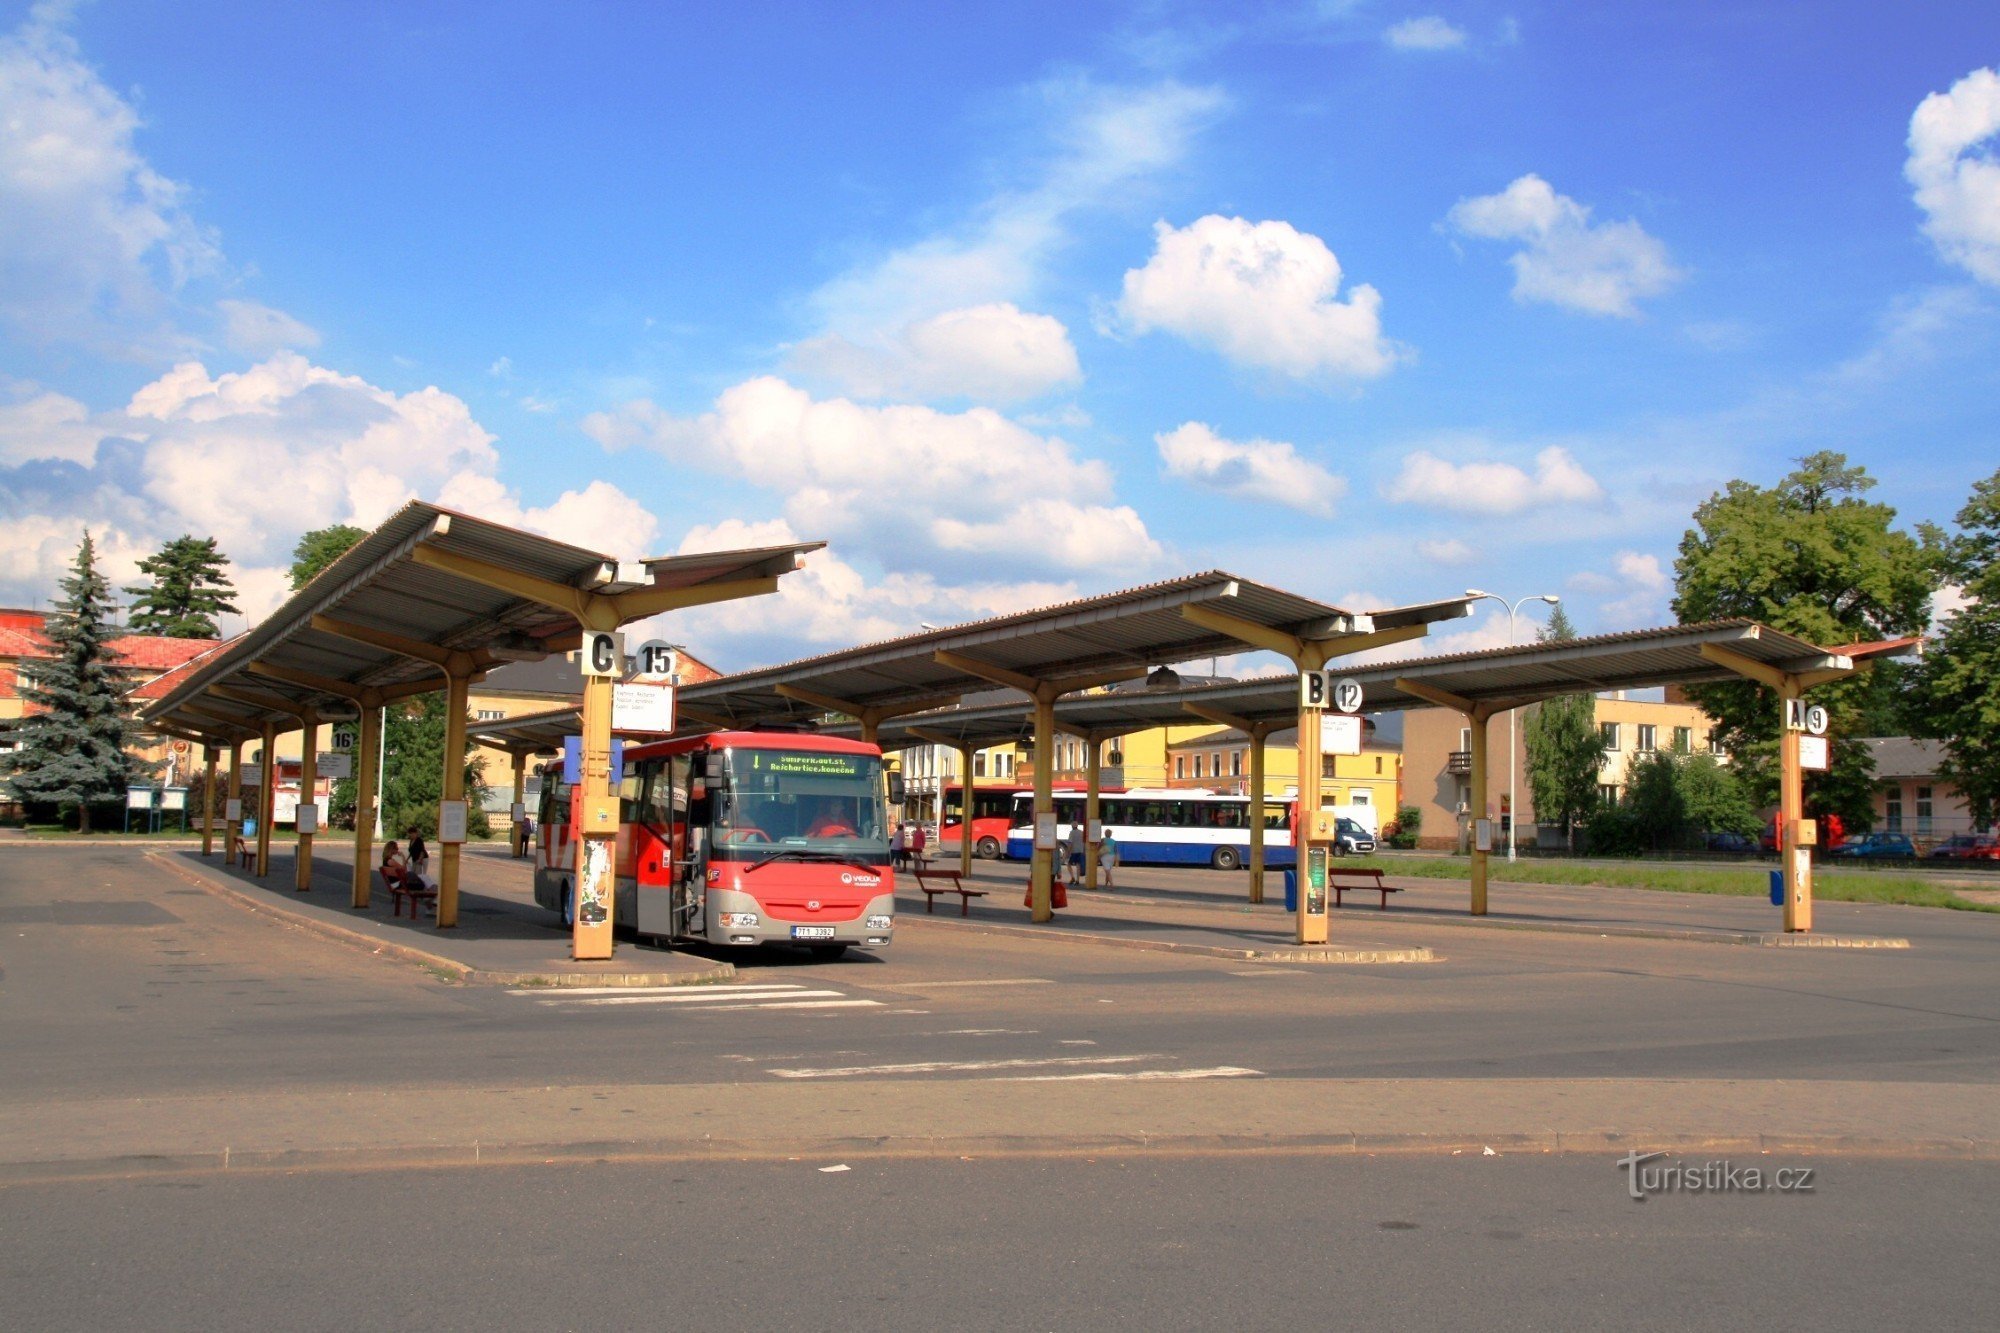 Šumperk - bus station